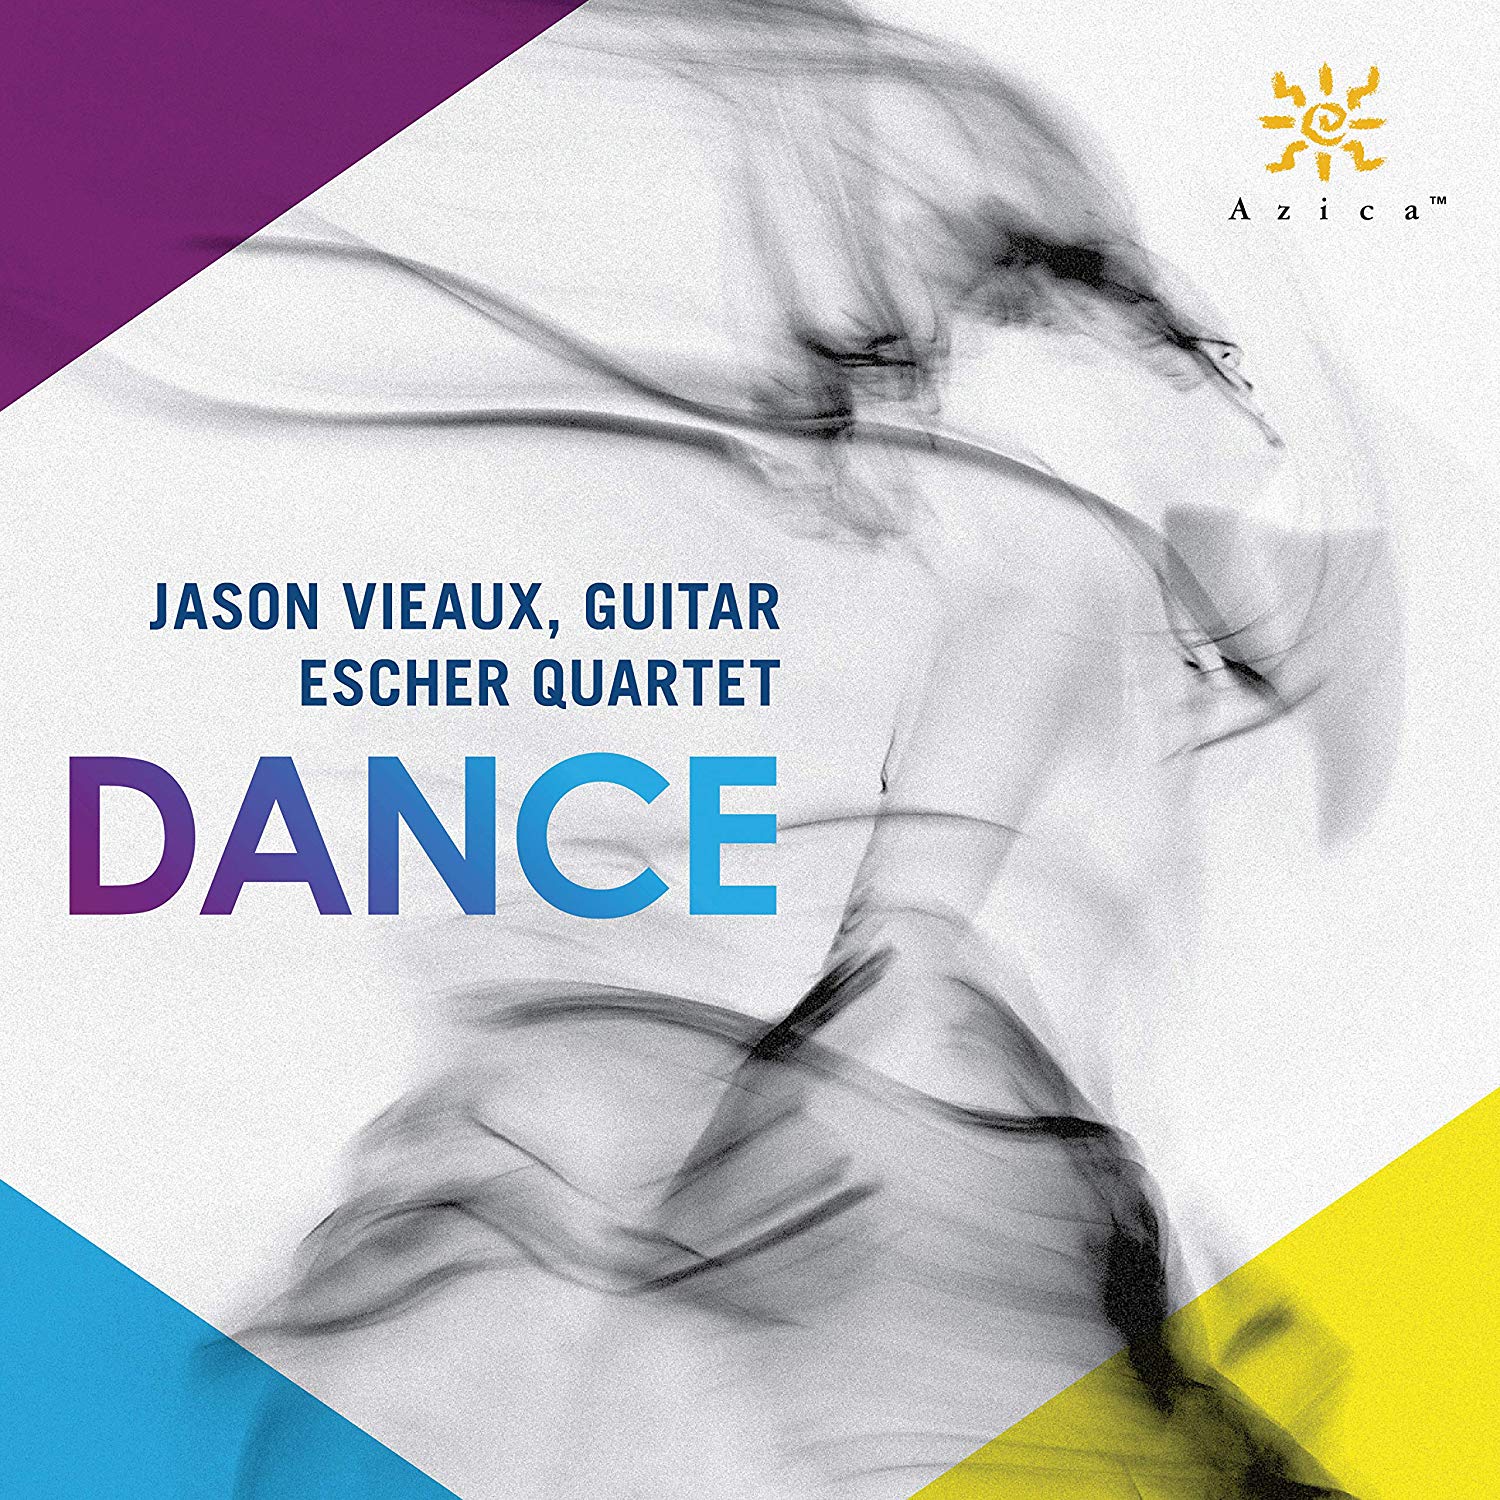 Dance: Jason Vieaux, Guitar and The Escher Quartet